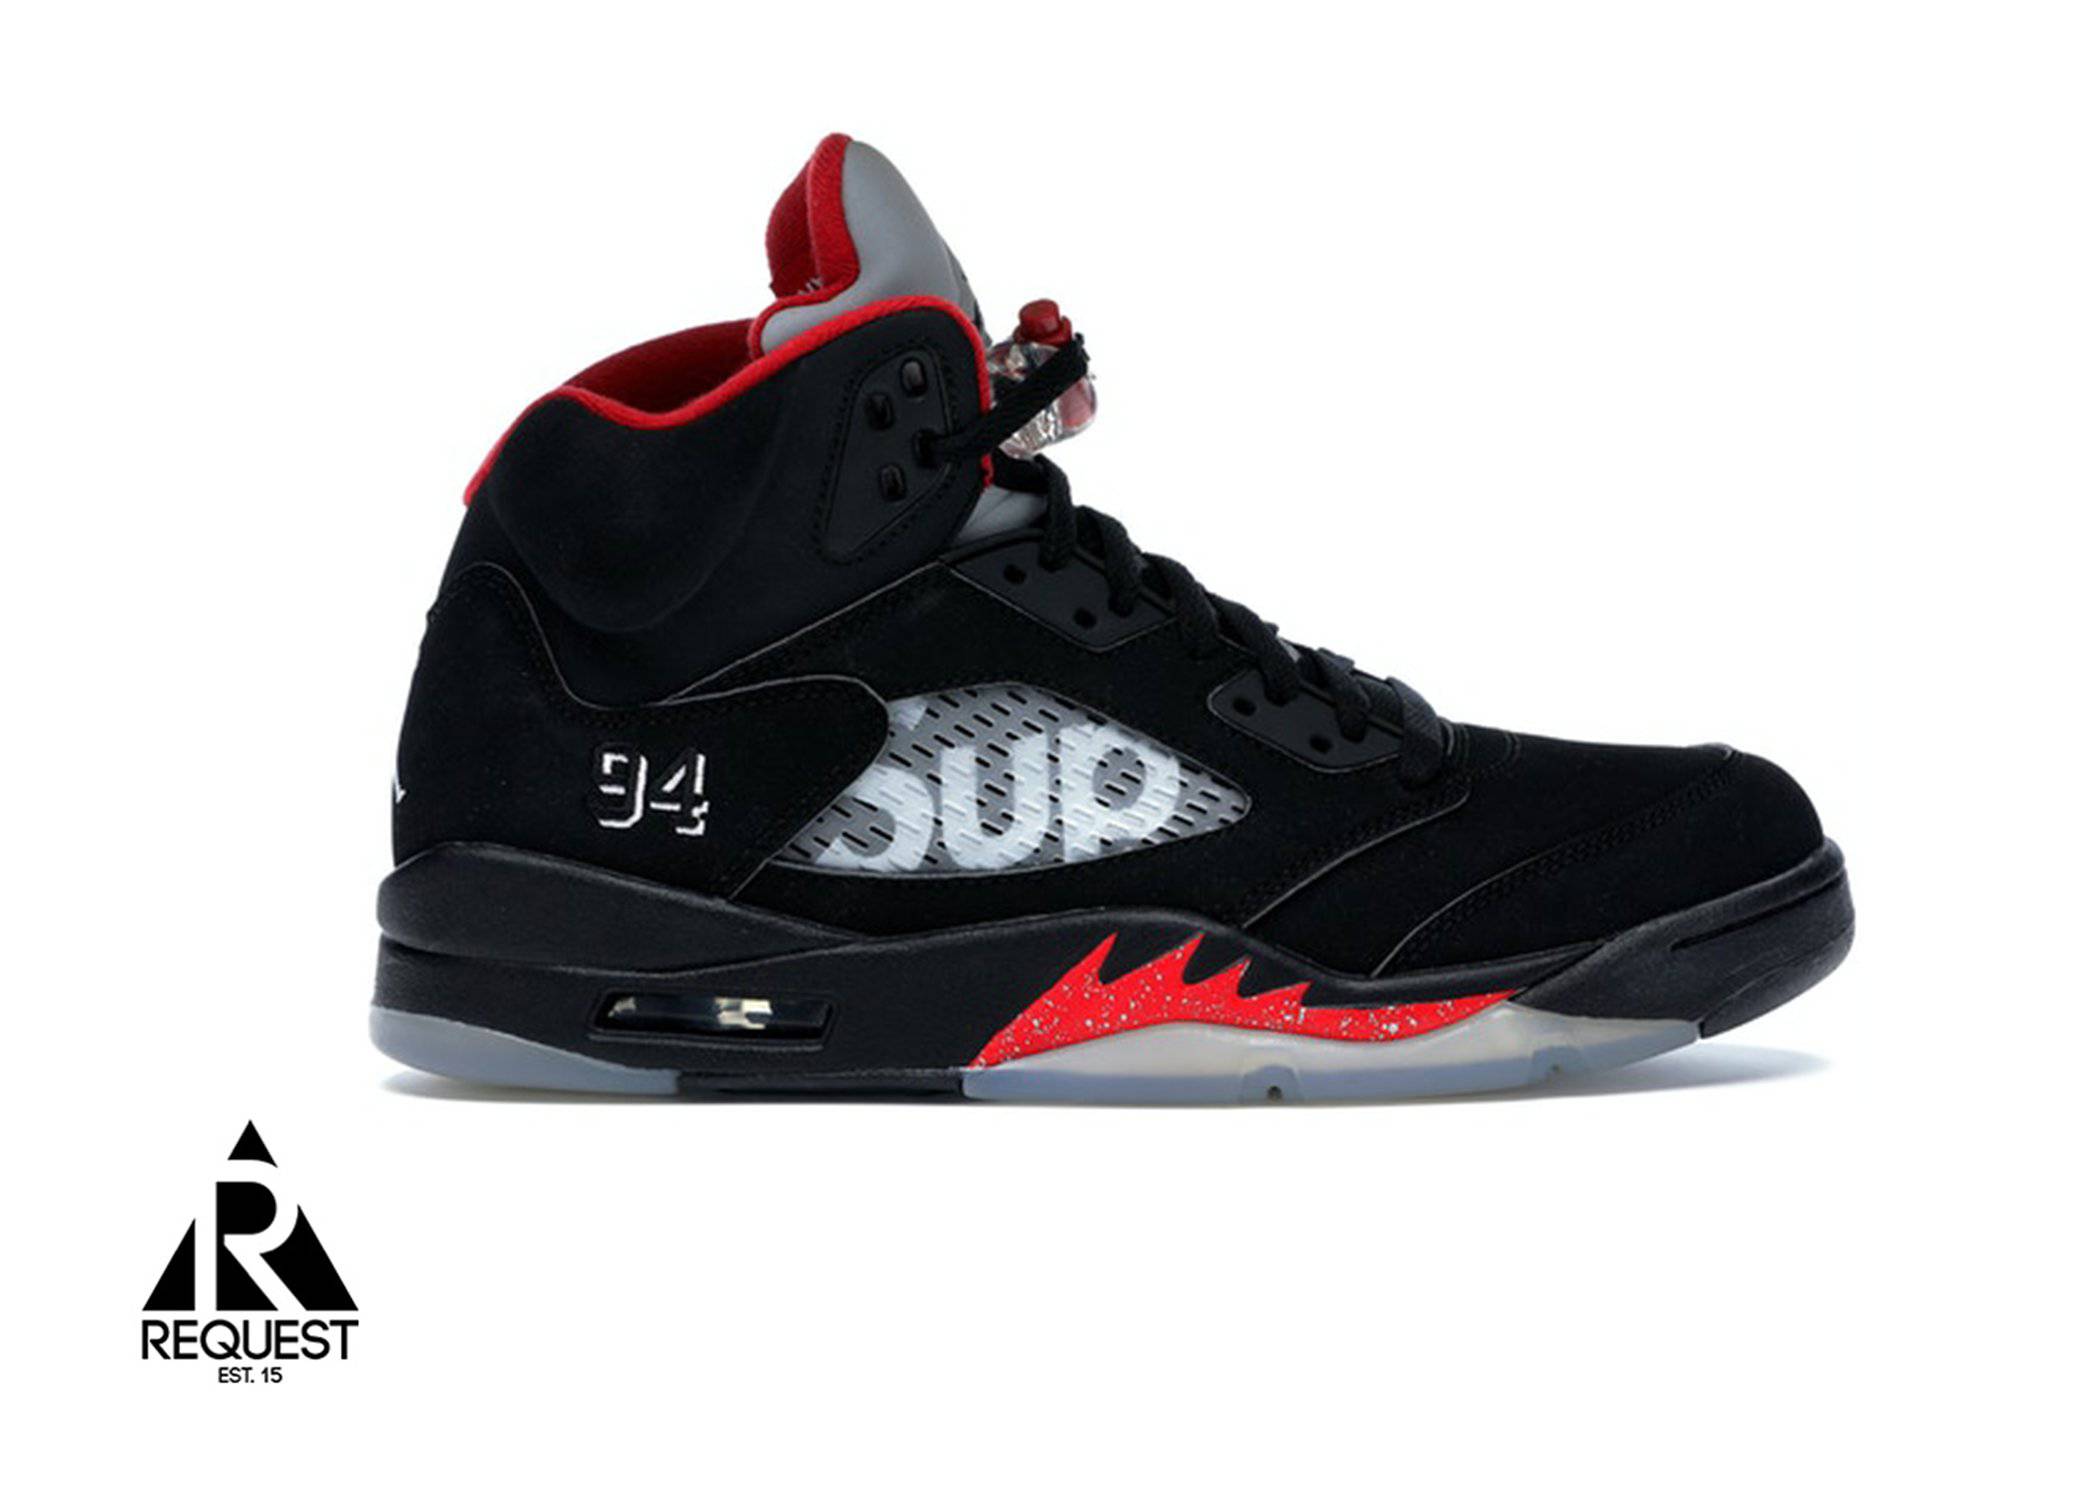 Air Jordan 5 Retro “Supreme Black”